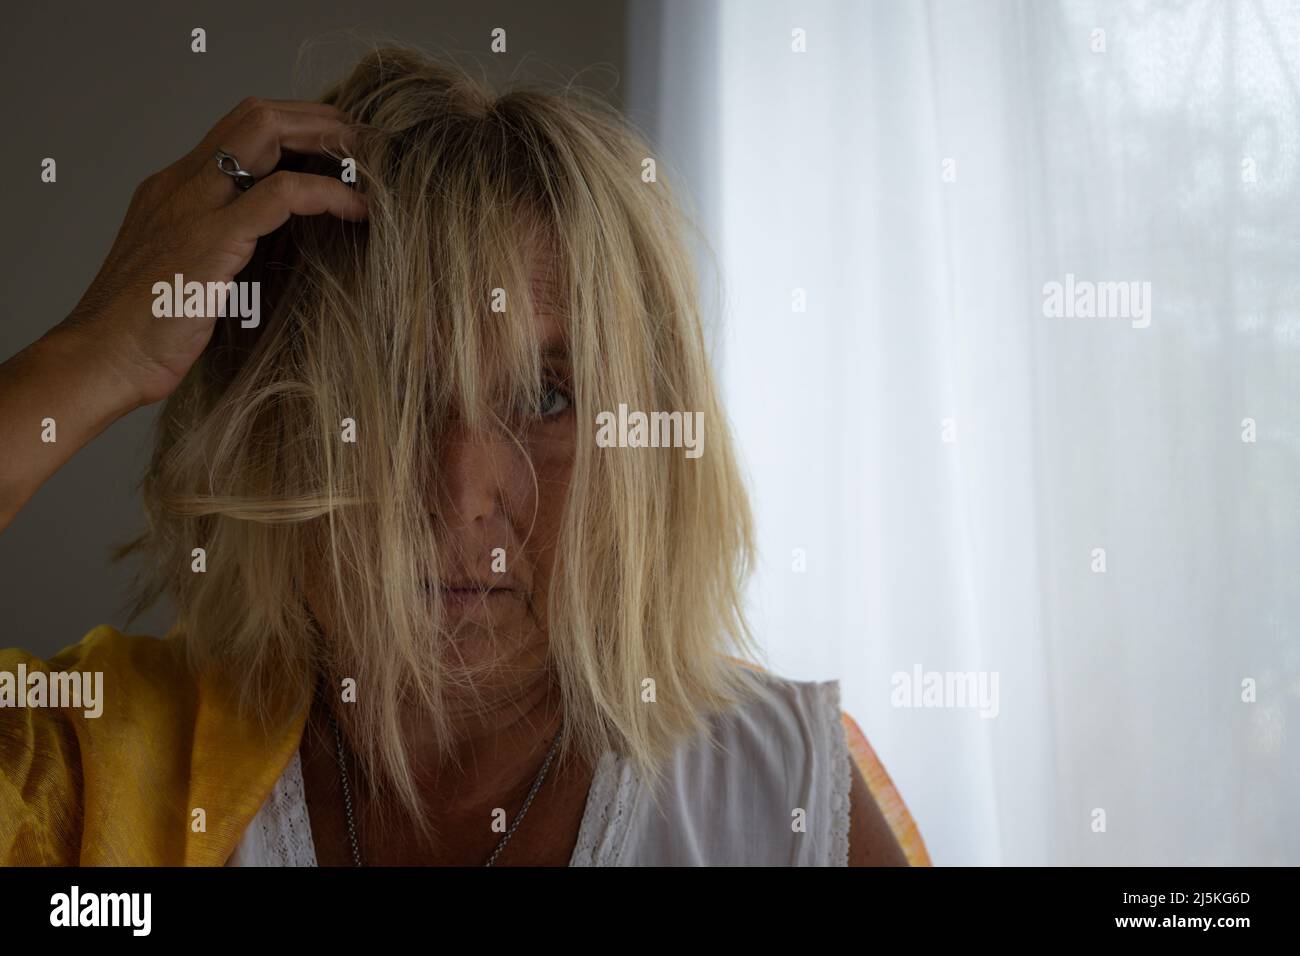 Femme blanche blonde de 50-60 ans avec cheveux touffés sur fond neutre. Concept de femme stressée. Banque D'Images